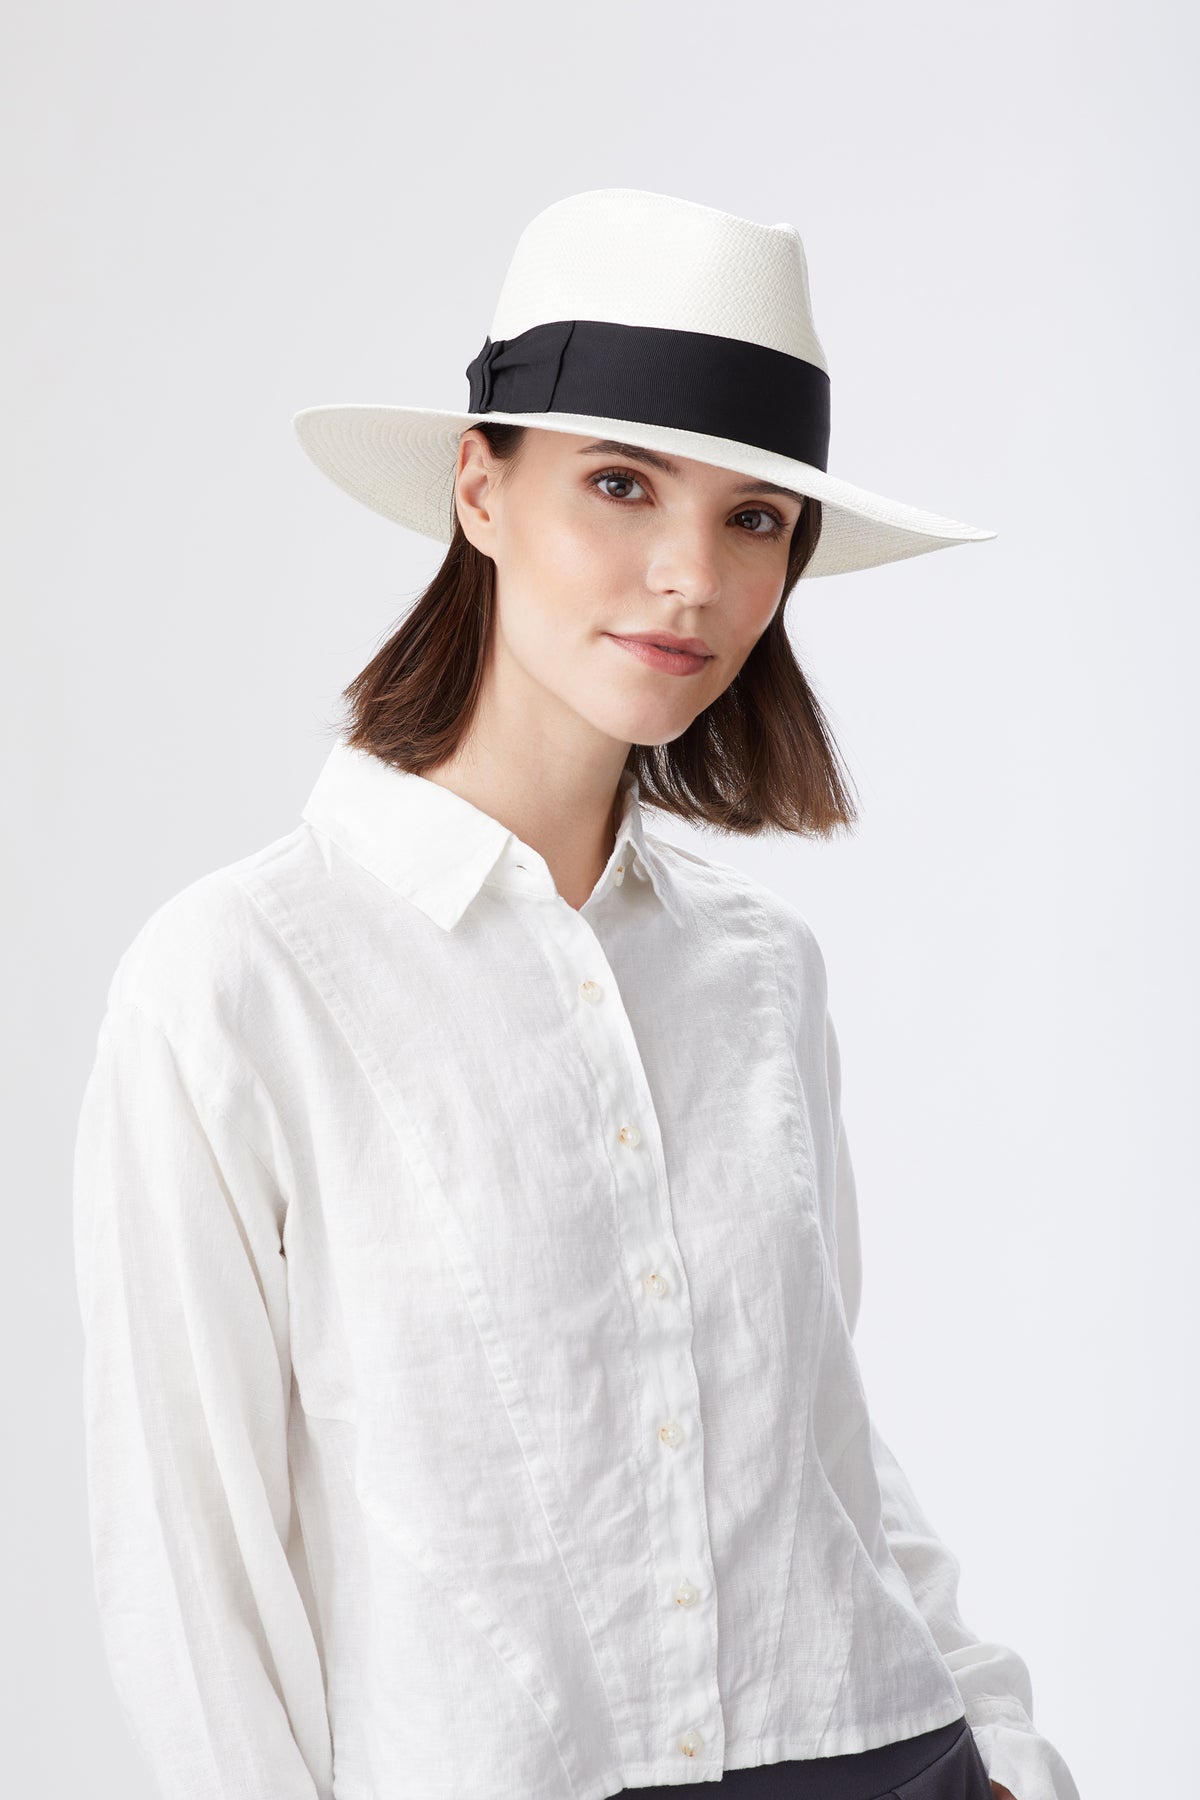 Sun Hats & Luxury Panama Hats for Women - Lock & Co. Hatters